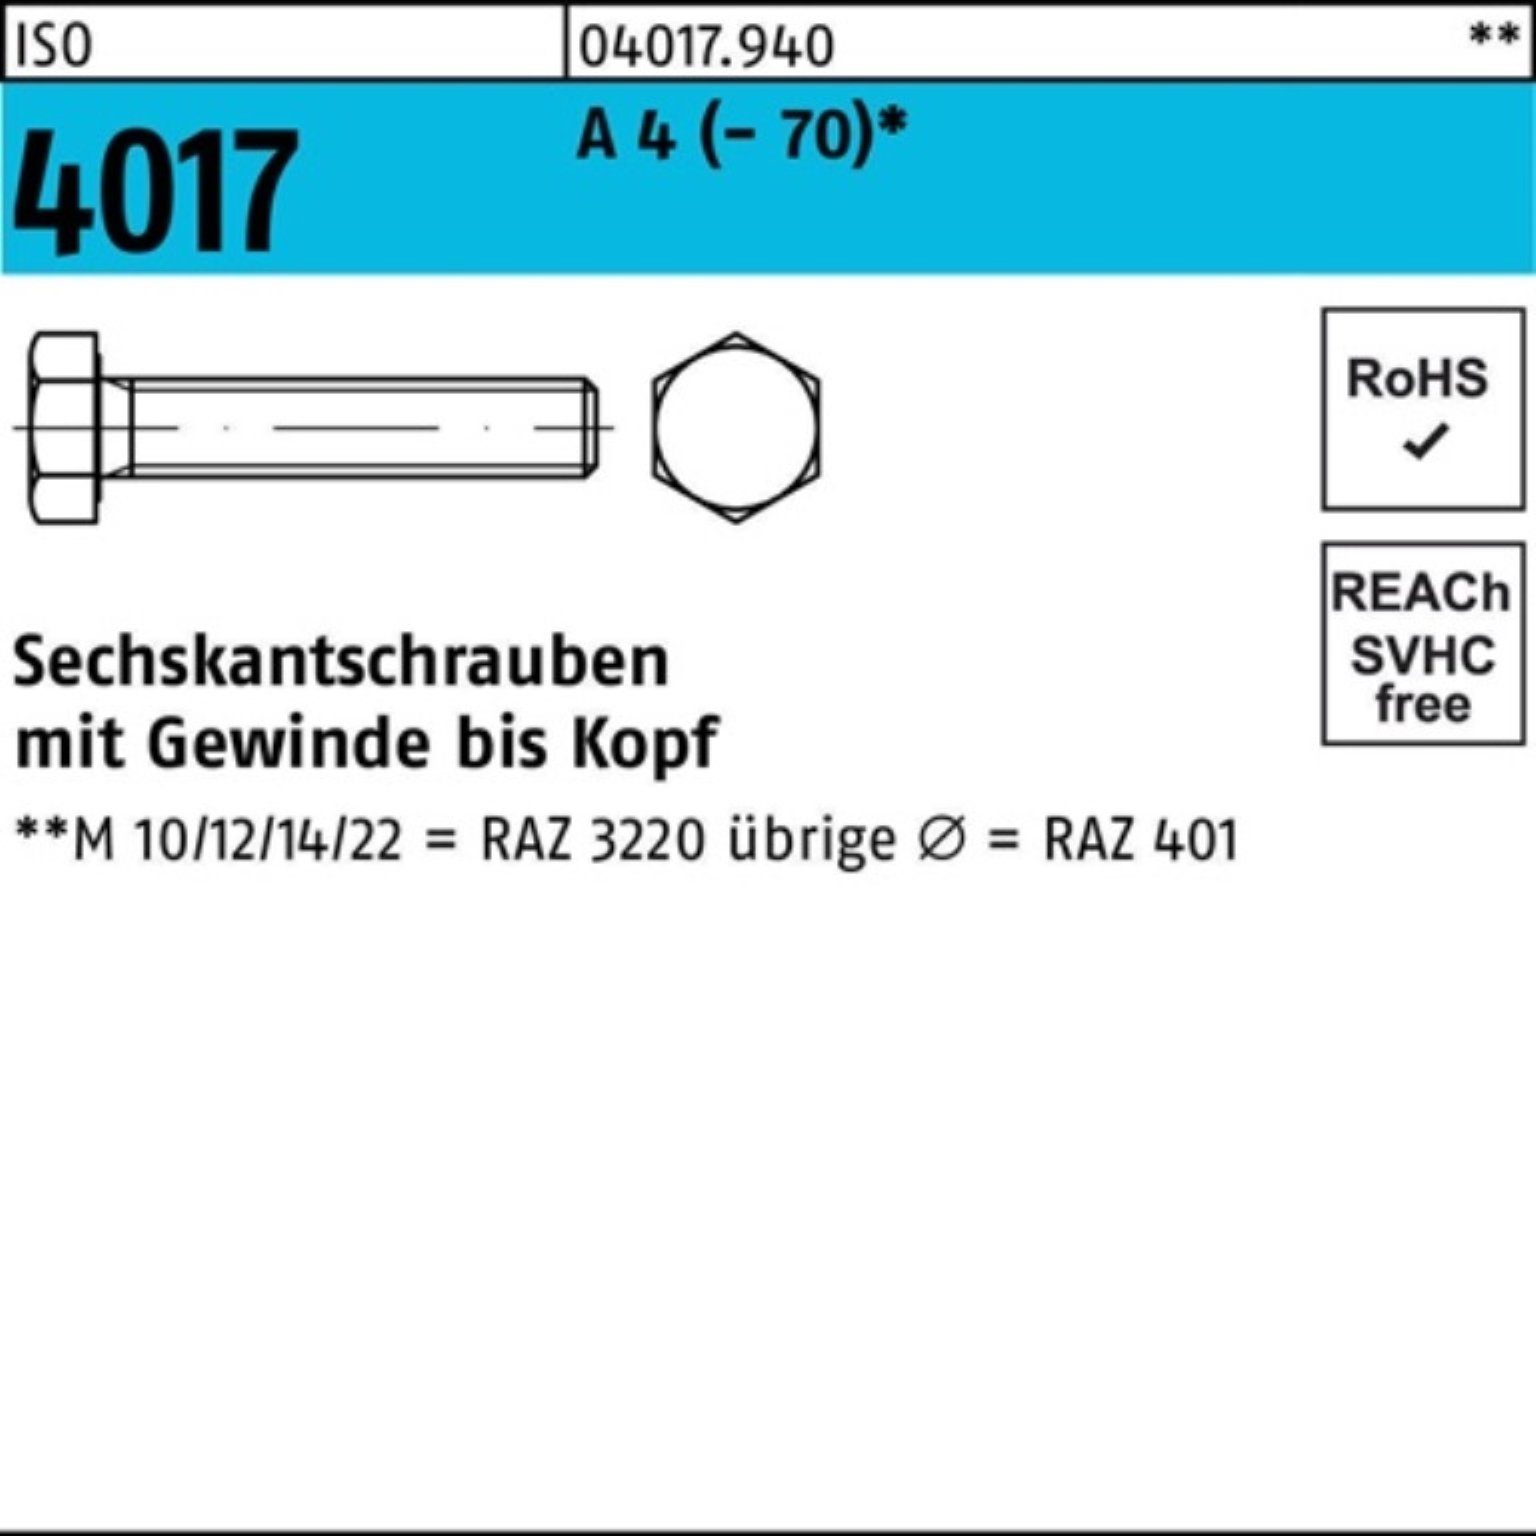 Bufab Sechskantschraube 100er 401 VG 4017 Sechskantschraube 4 M3x 100 Pack A ISO Stück ISO 40